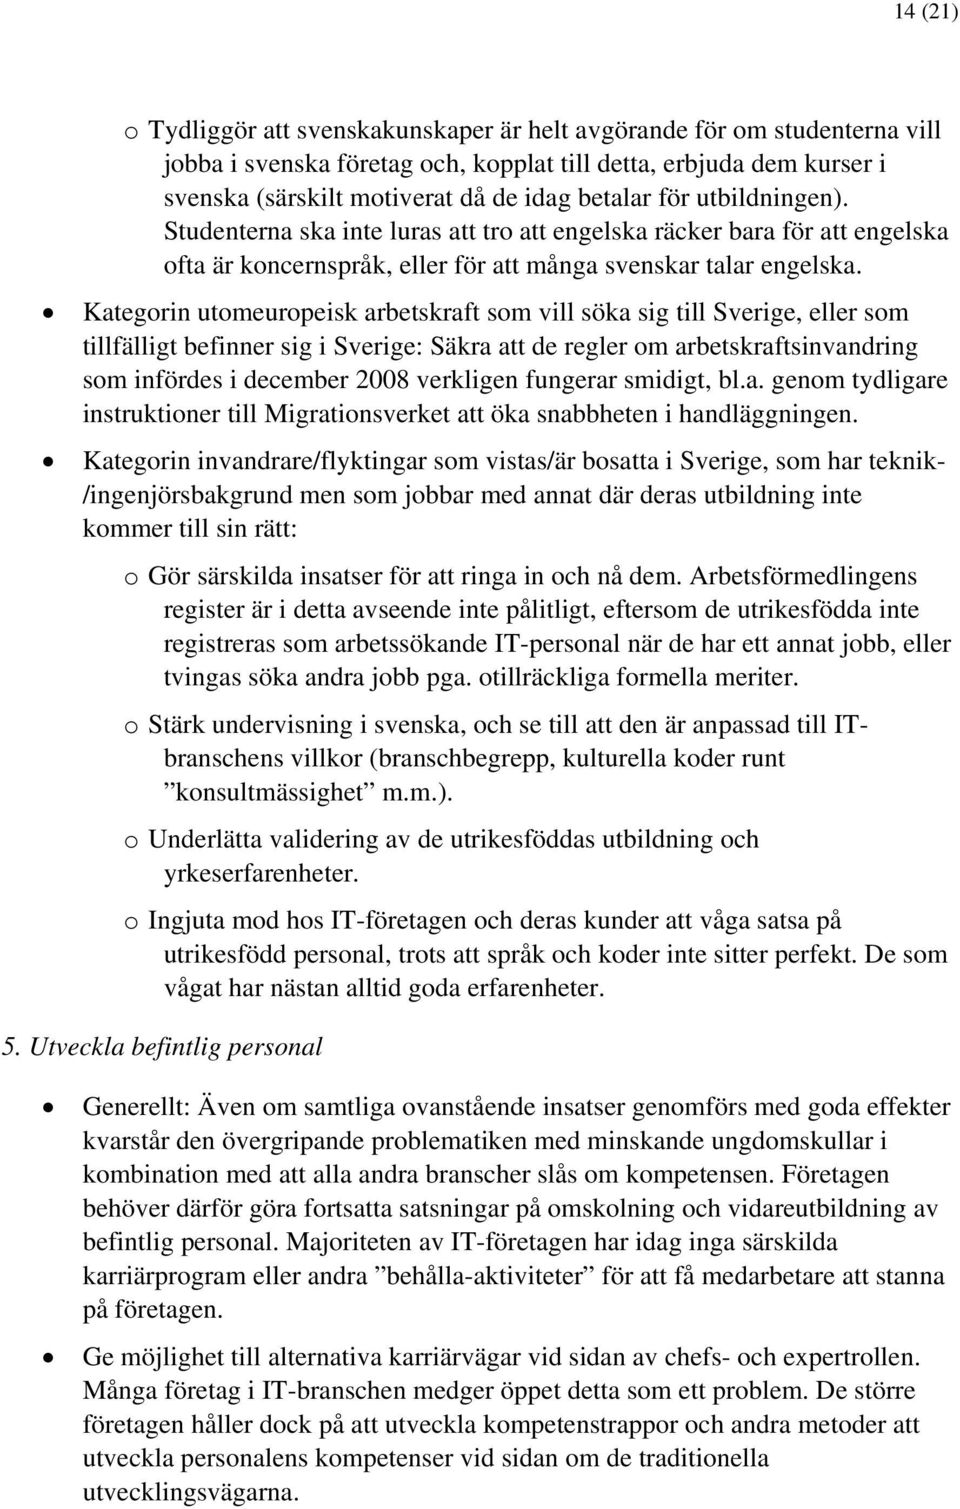 Kategorin utomeuropeisk arbetskraft som vill söka sig till Sverige, eller som tillfälligt befinner sig i Sverige: Säkra att de regler om arbetskraftsinvandring som infördes i december 2008 verkligen